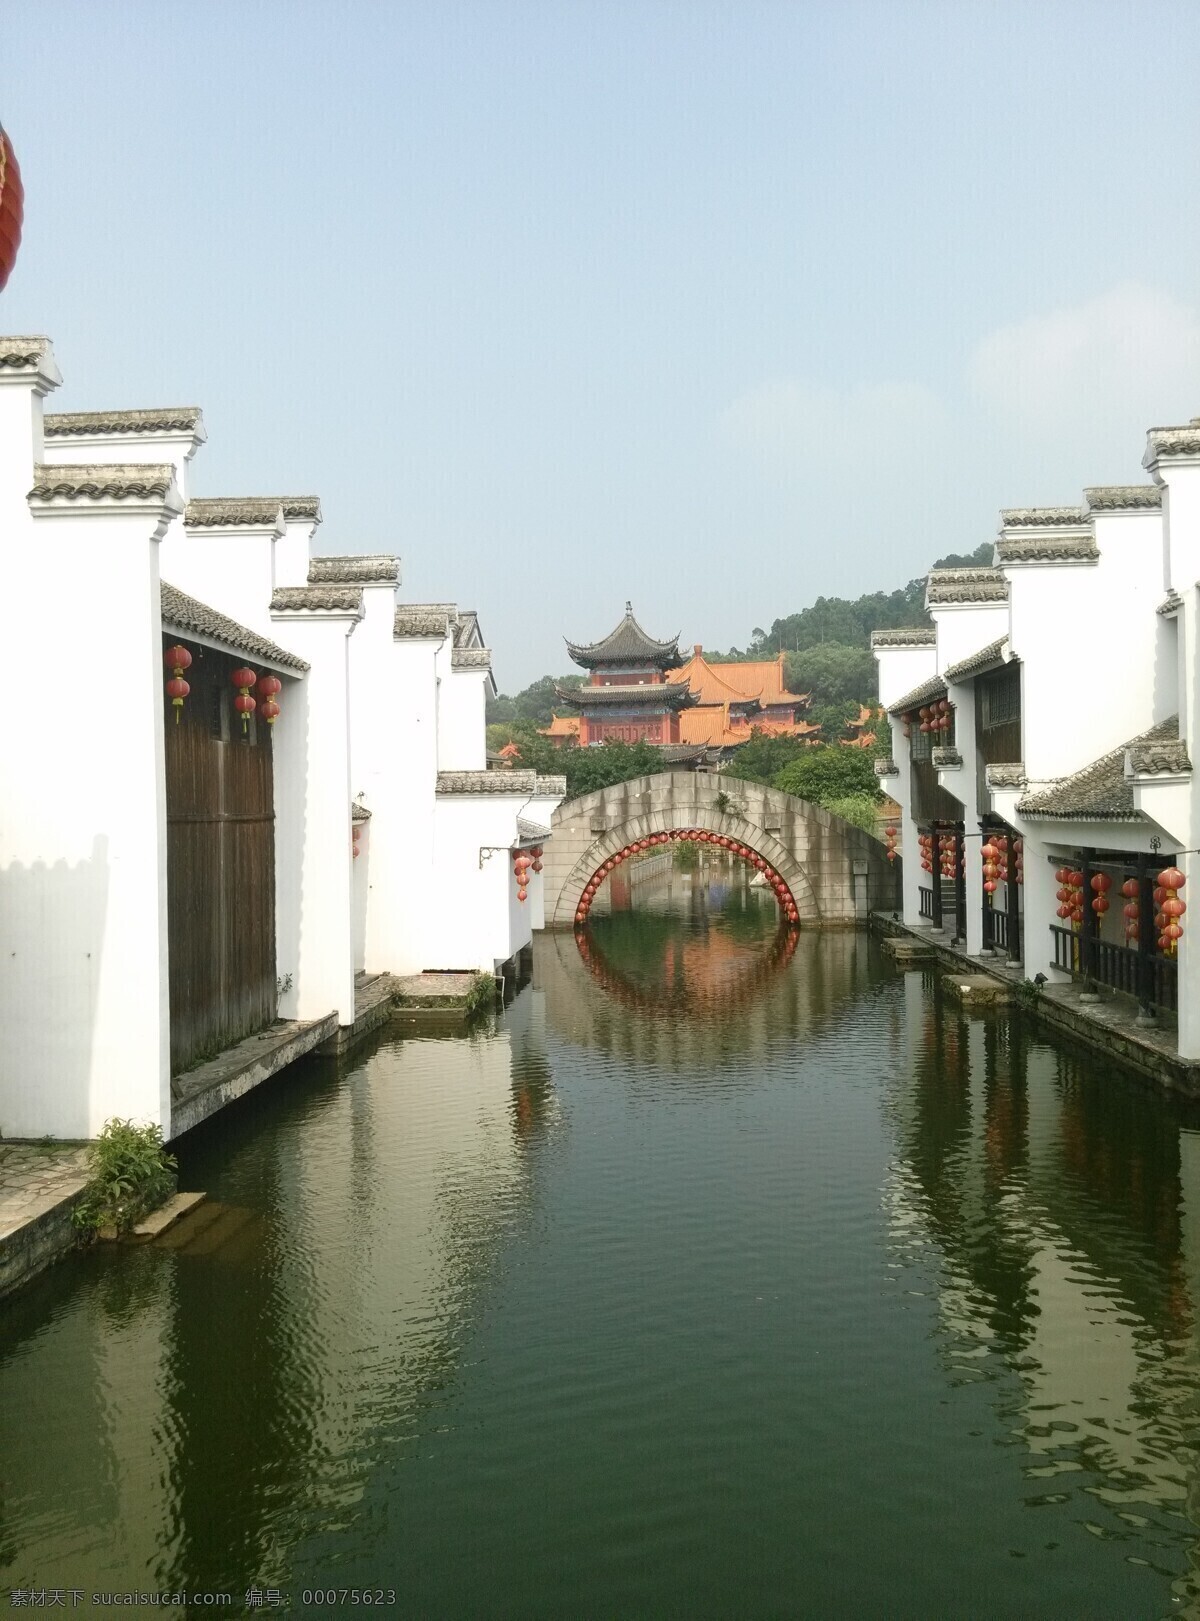 苏州风景 拱桥 流水 房屋 江南风景 倒影 国内旅游 旅游摄影